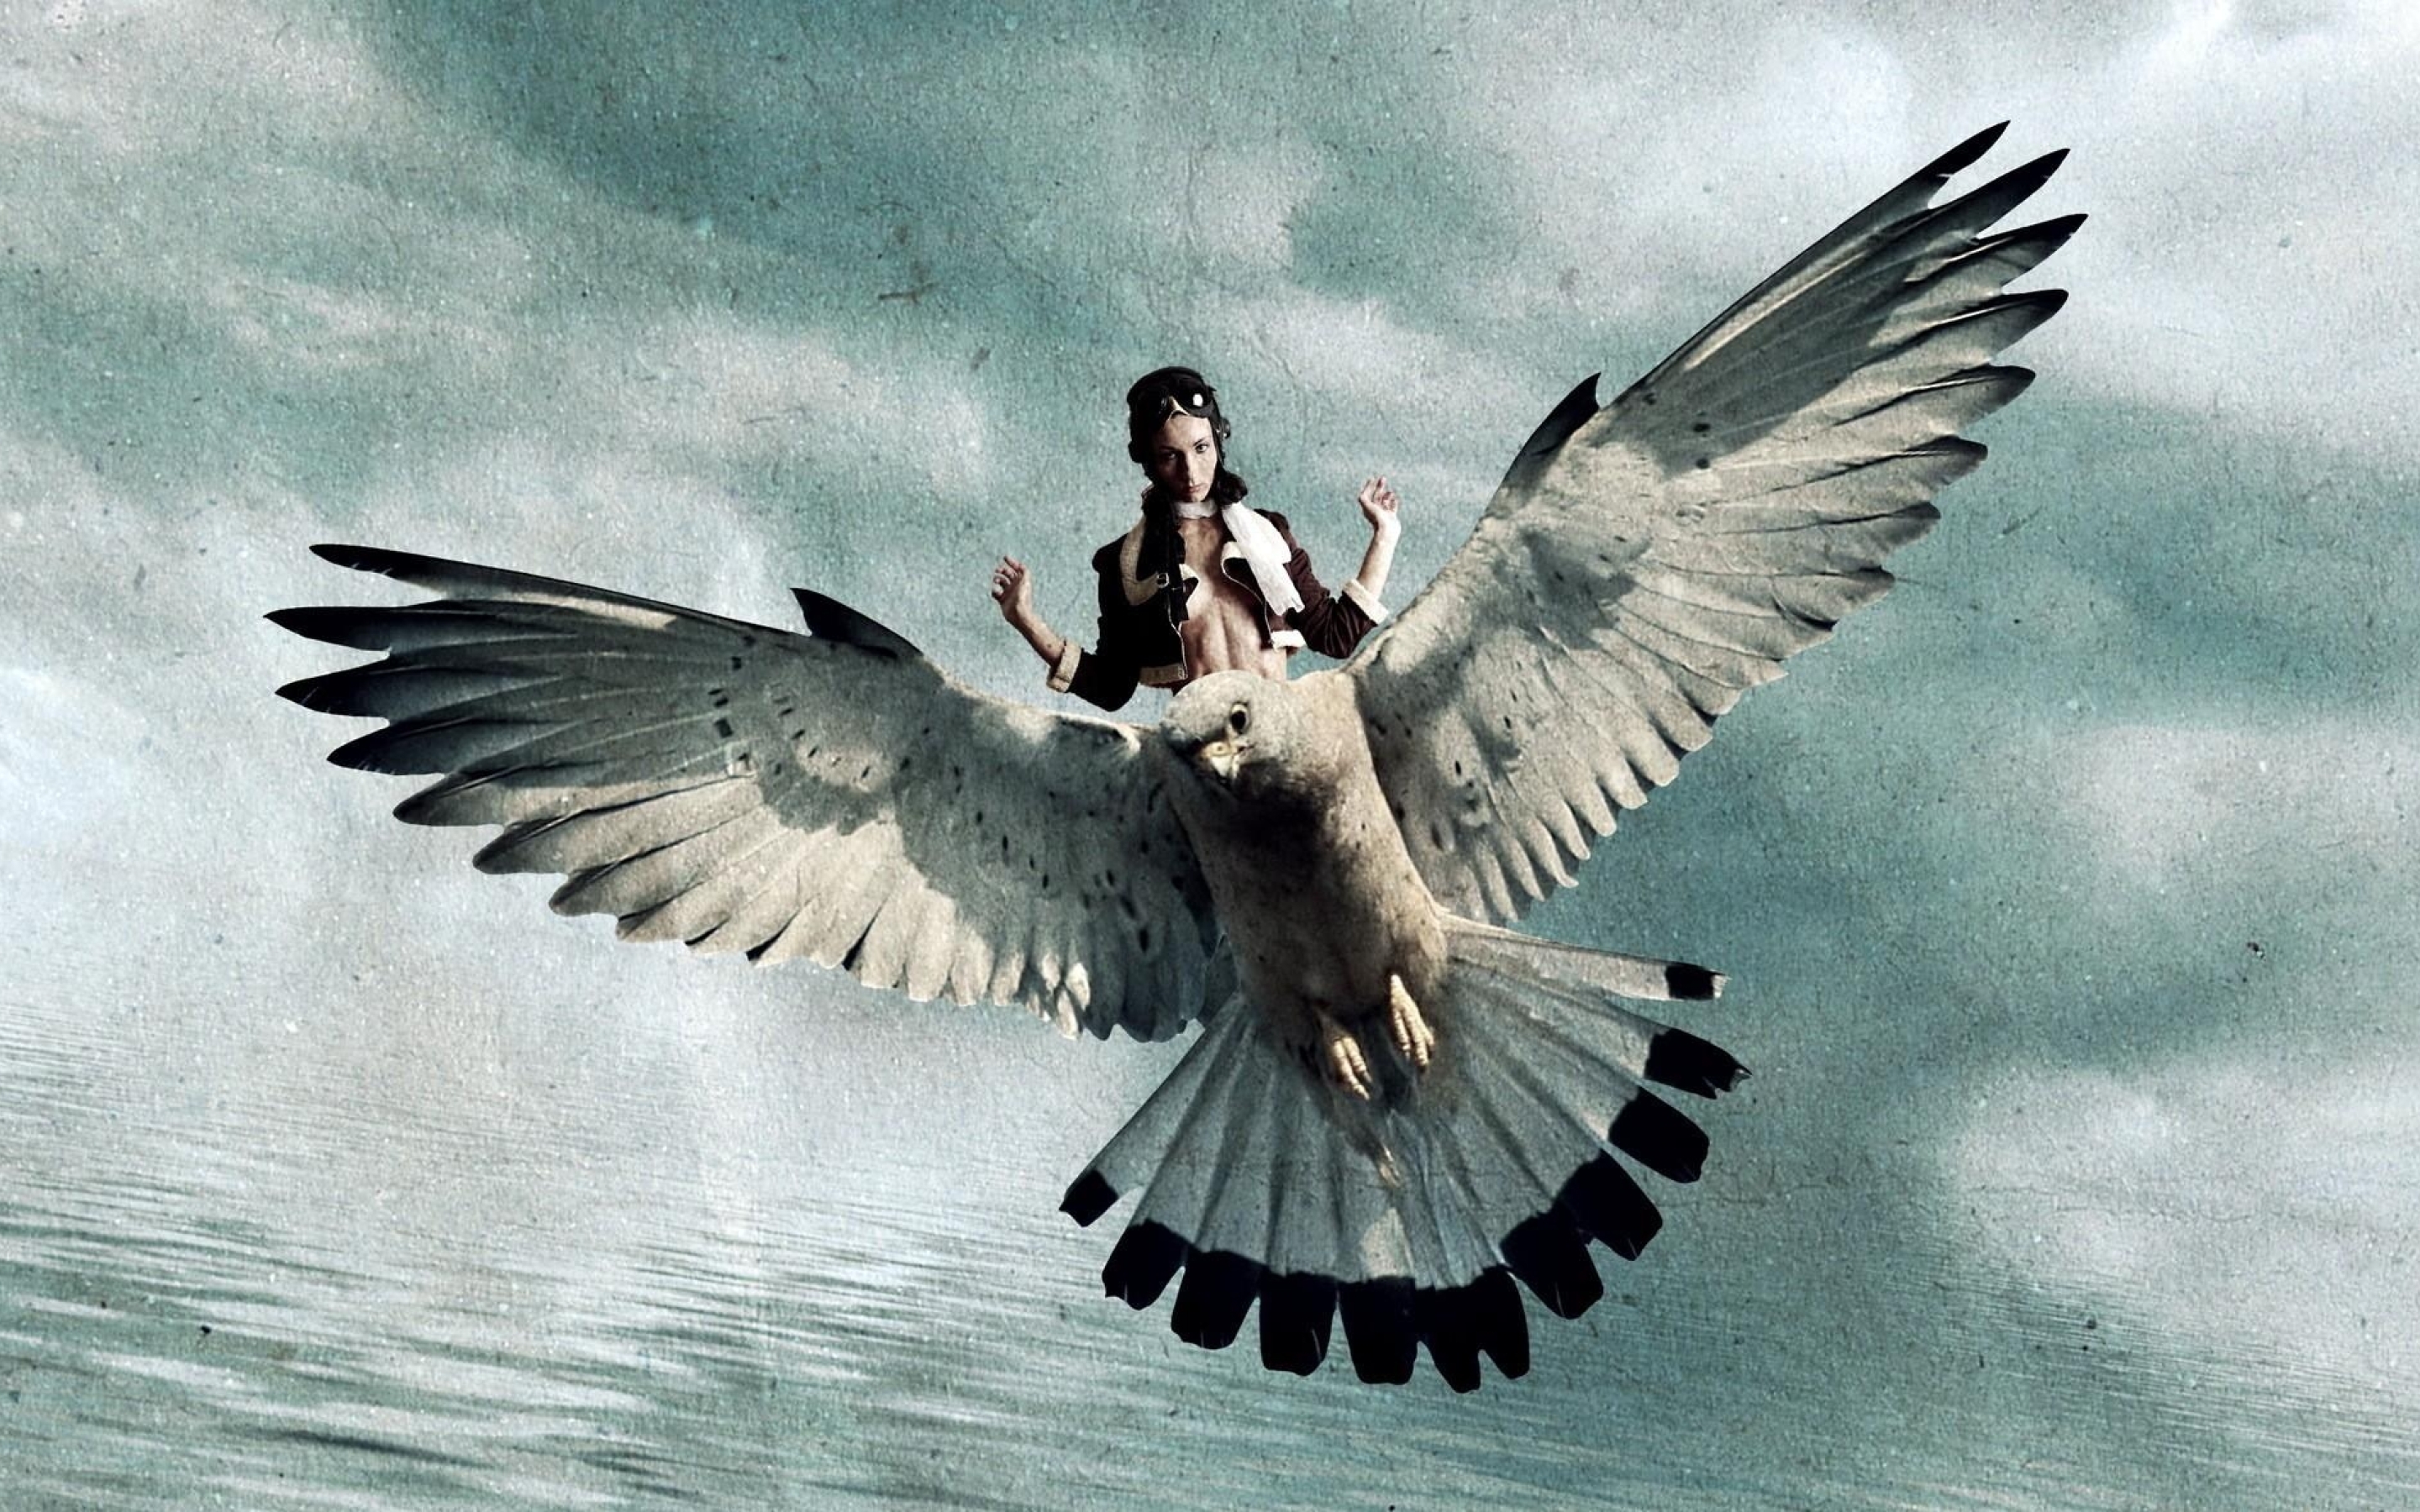 У парящих птиц большие крылья. Птица в полете. Женщина птица. Человек с крыльями птицы. Женщина птица с крыльями.